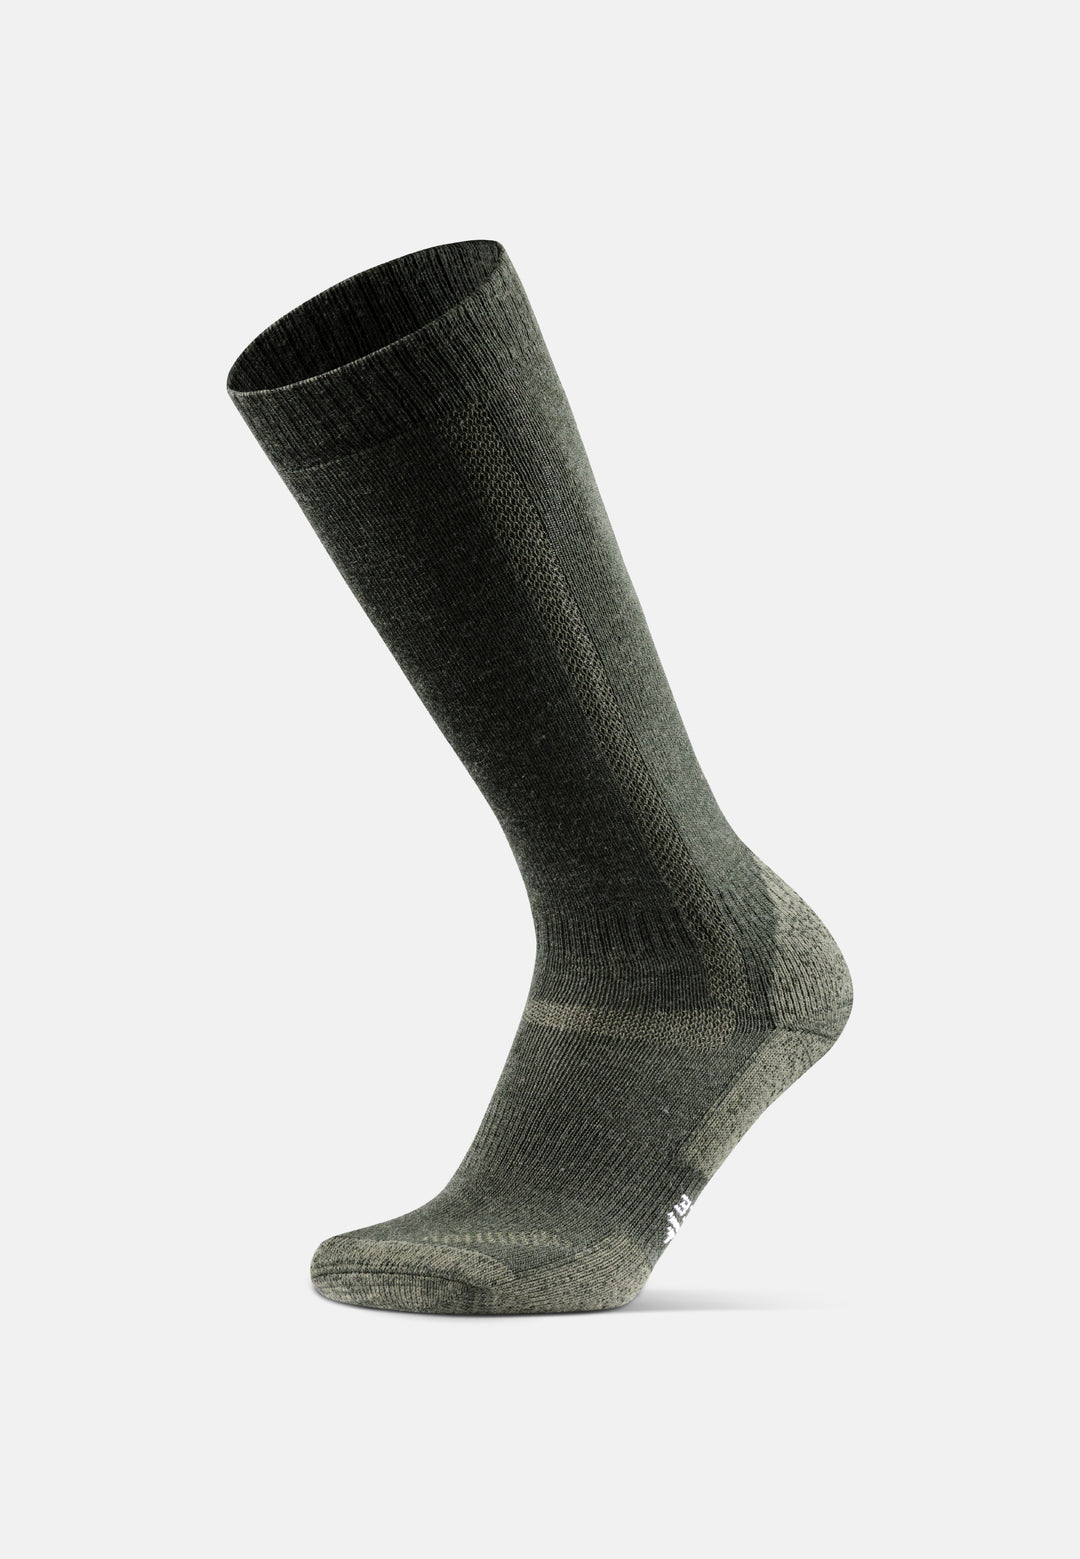 DANISH ENDURANCE Merino Wool Light Hiking Socks 3-Pack for Men